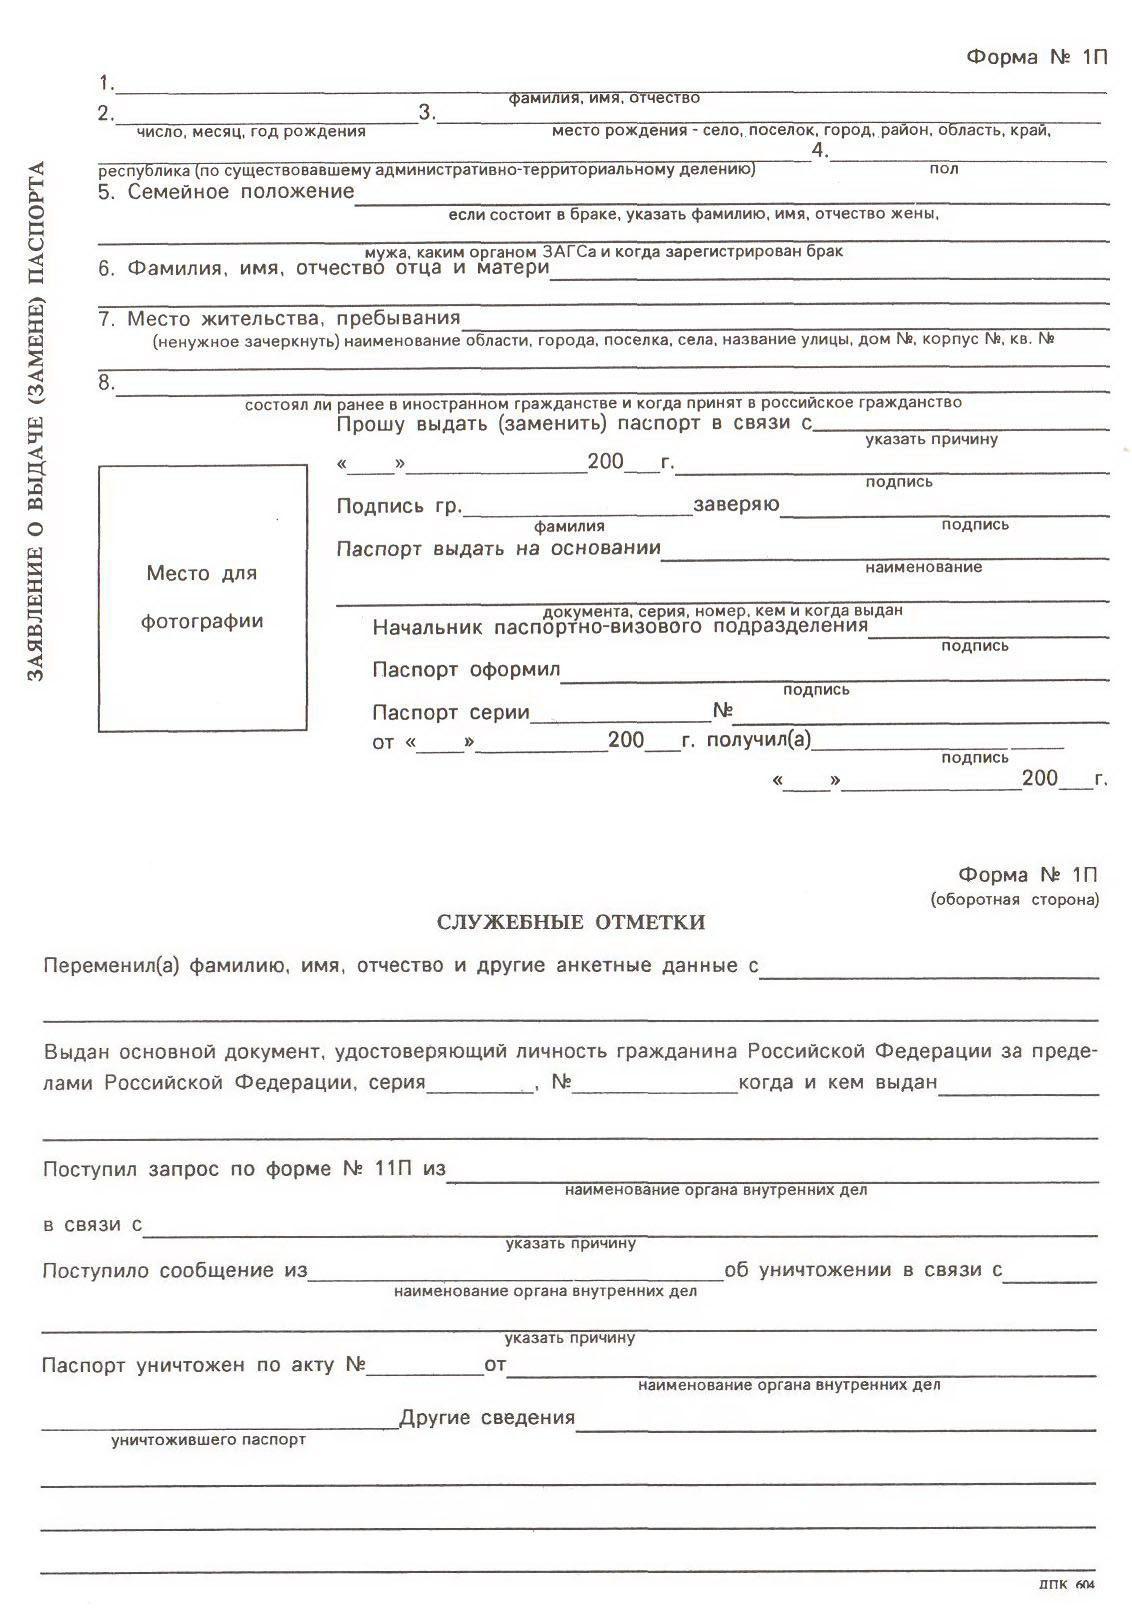 Образец заполнения заявления на паспорт РФ при потере